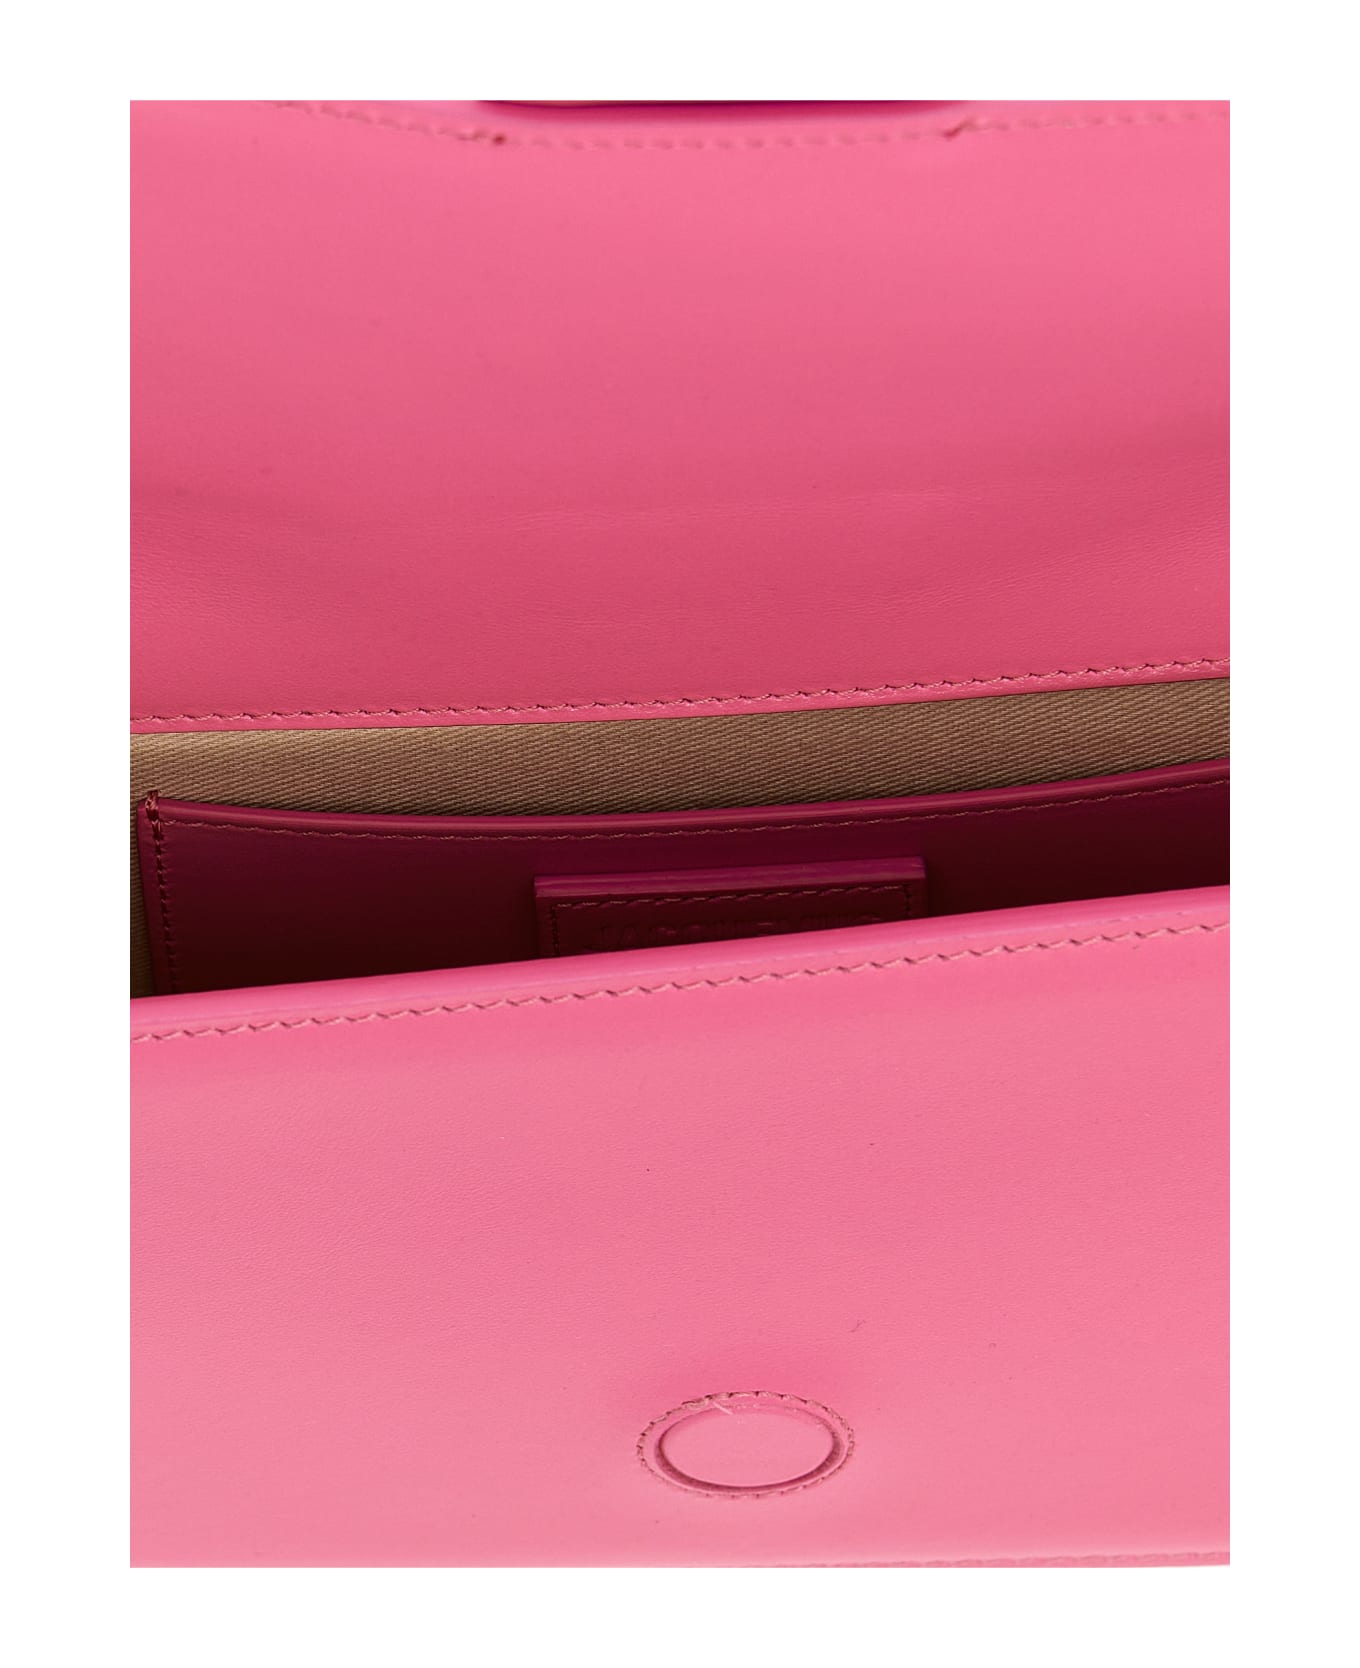 Jacquemus 'le Bambino Long' Shoulder Bag - Pink